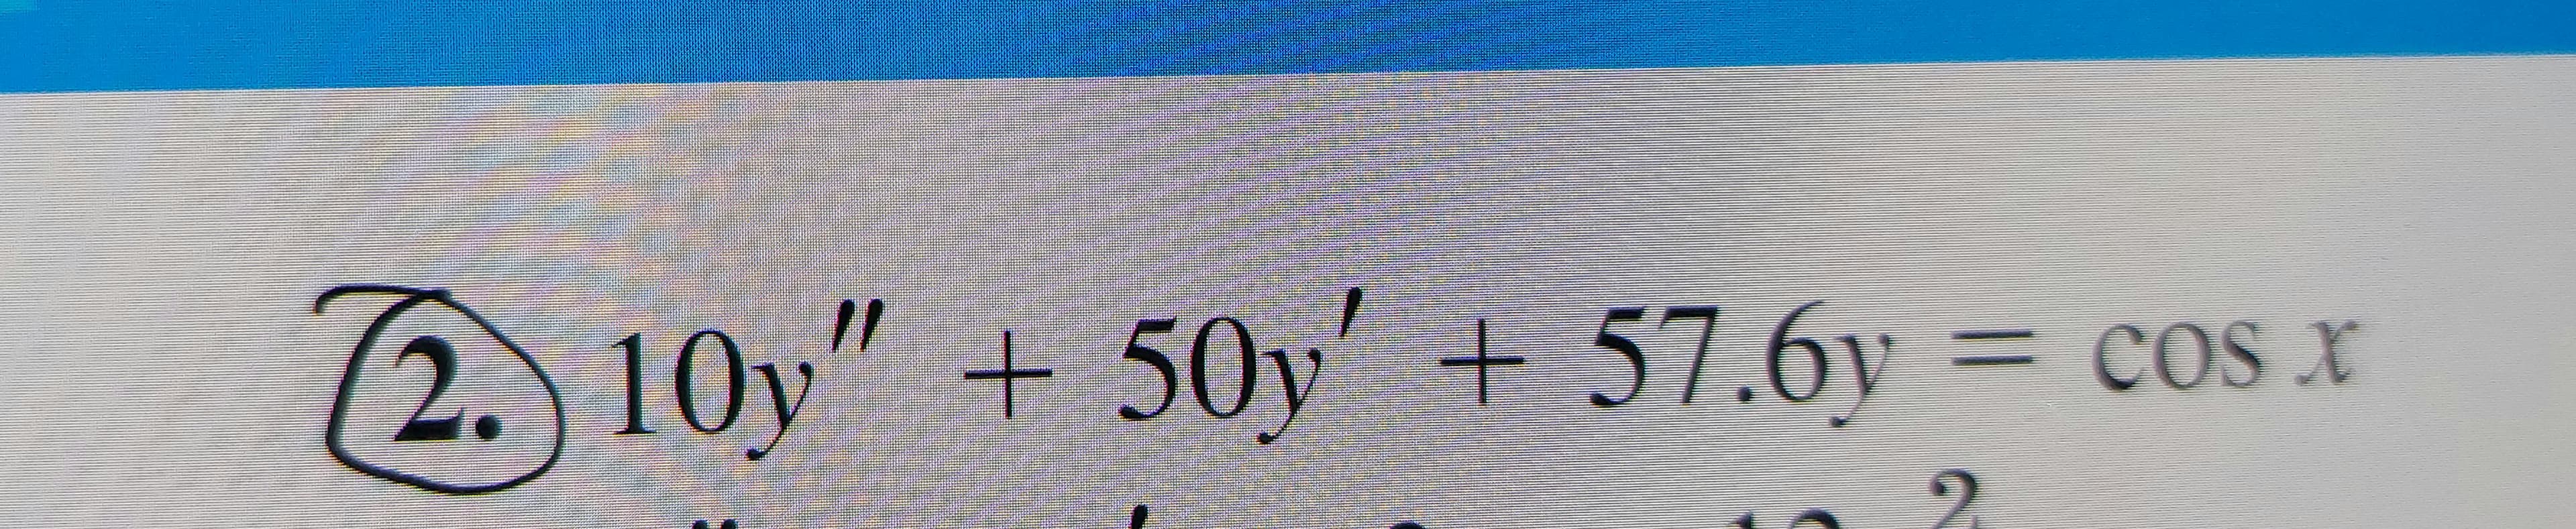 2. 10y" + 50y' + 57.6y
= cos x
%3D
2.
